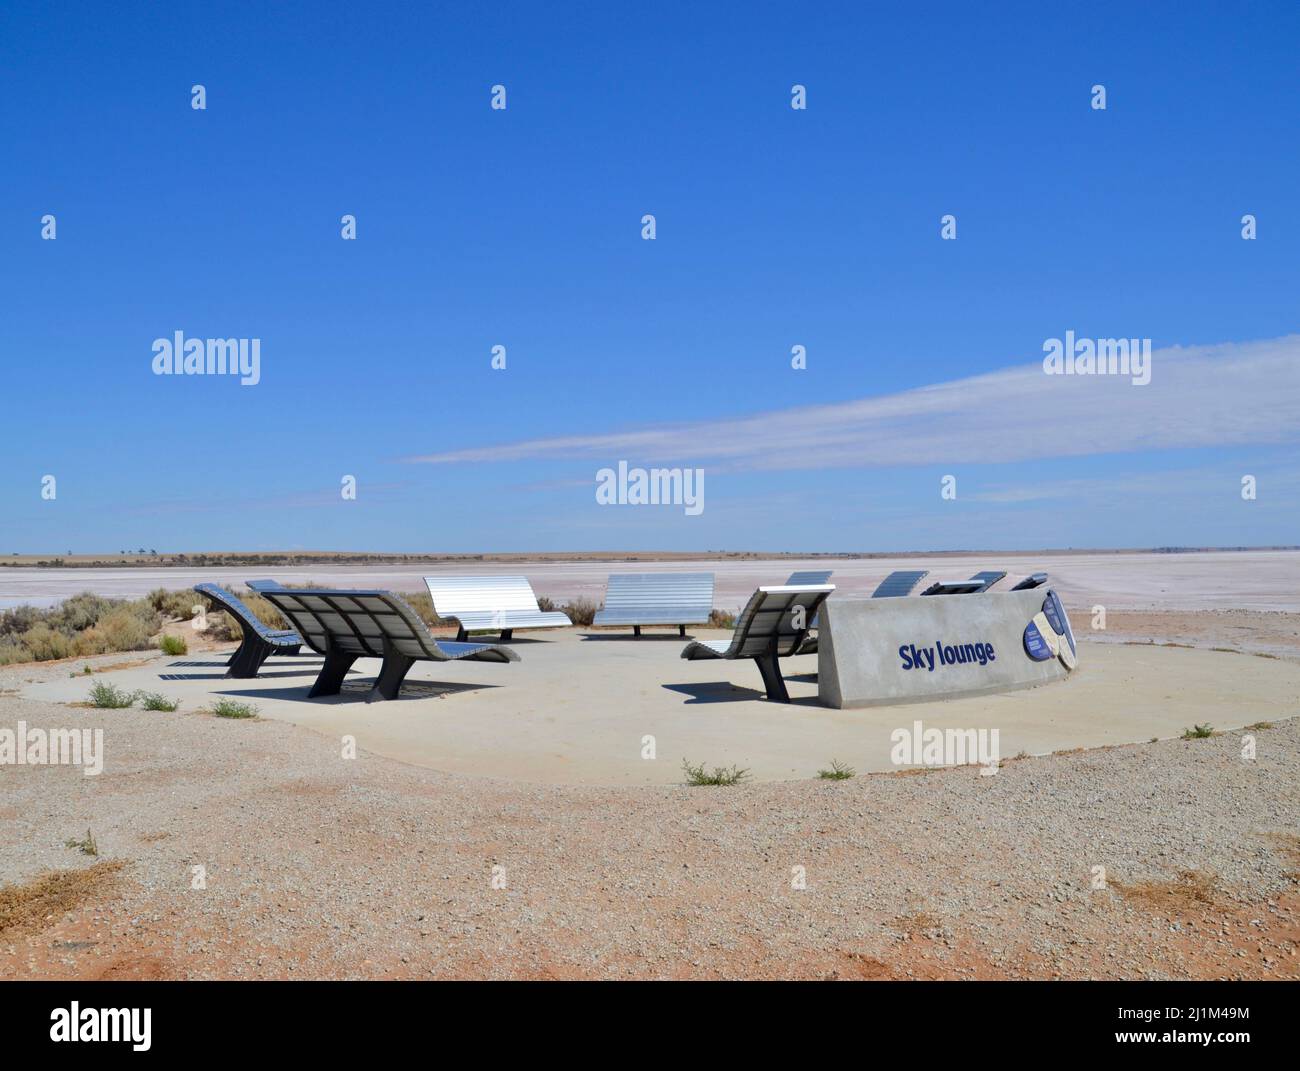 Queste panchine sono chiamate Sky Lounge e sono disposte in un cerchio per le persone di andare a guardare le stelle del Lago Tyrrell in Outback Australia Foto Stock